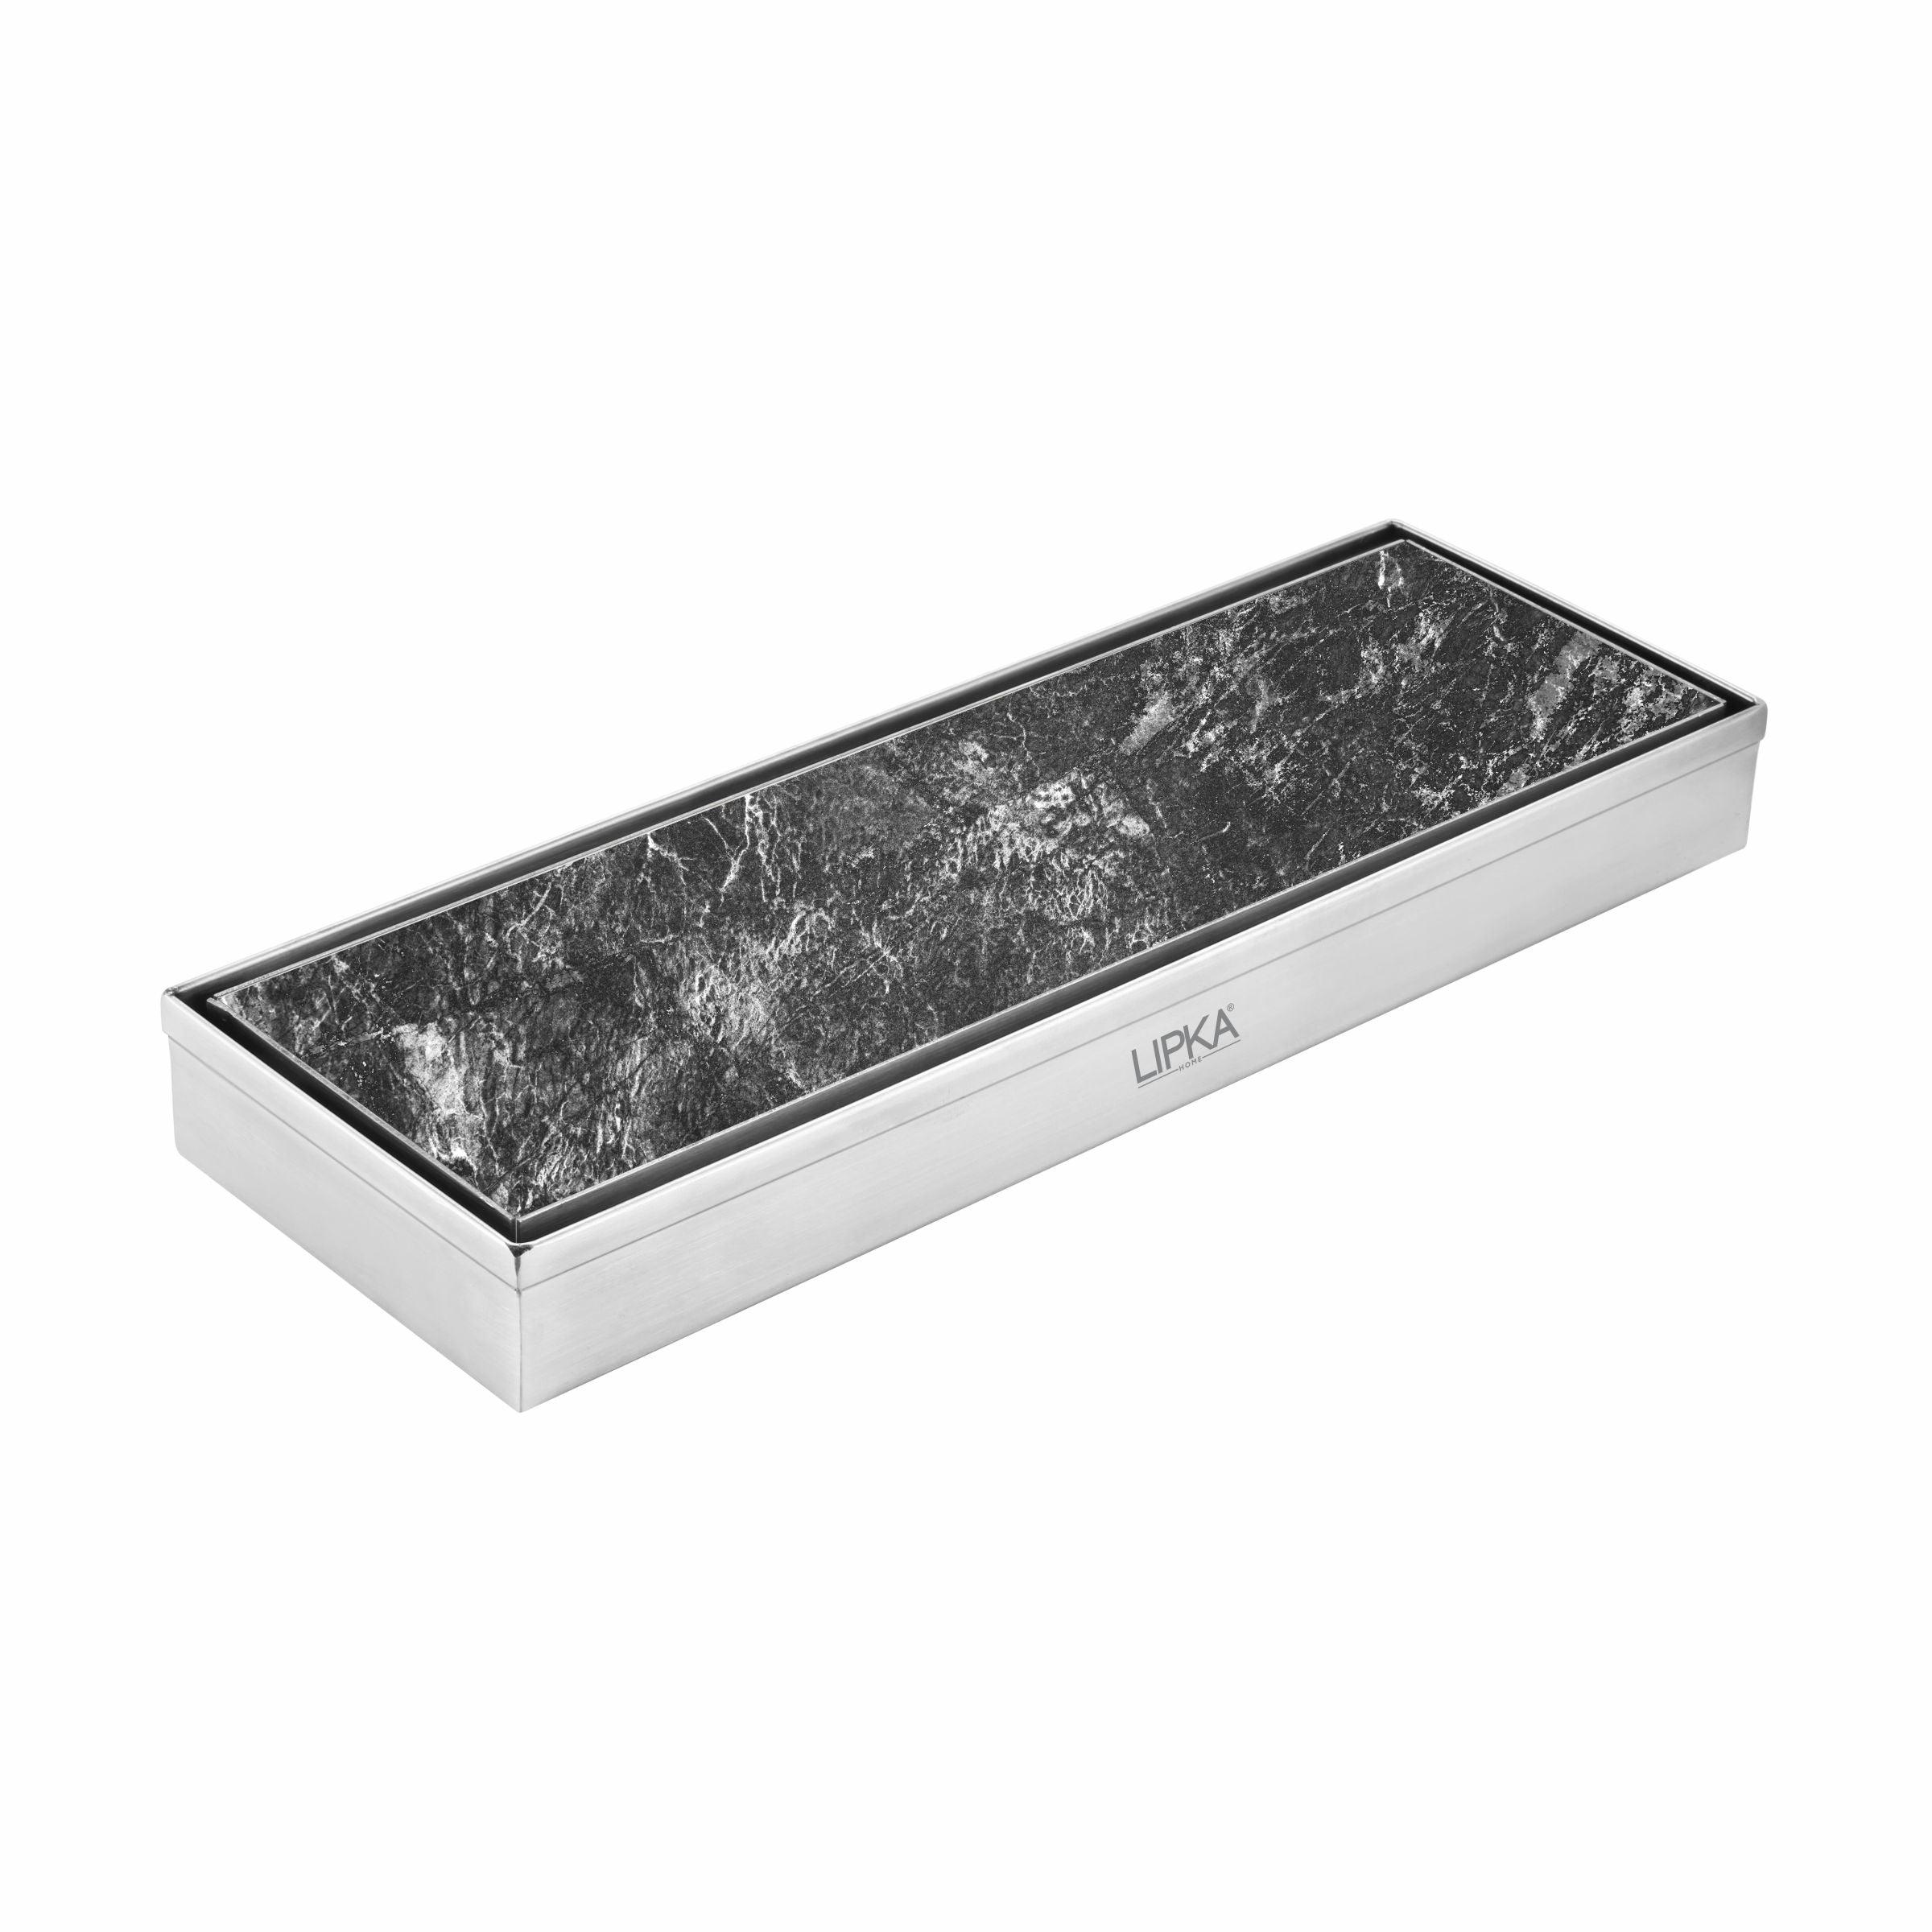 Tile Insert Shower Drain Channel (18 x 4 Inches) - LIPKA - Lipka Home